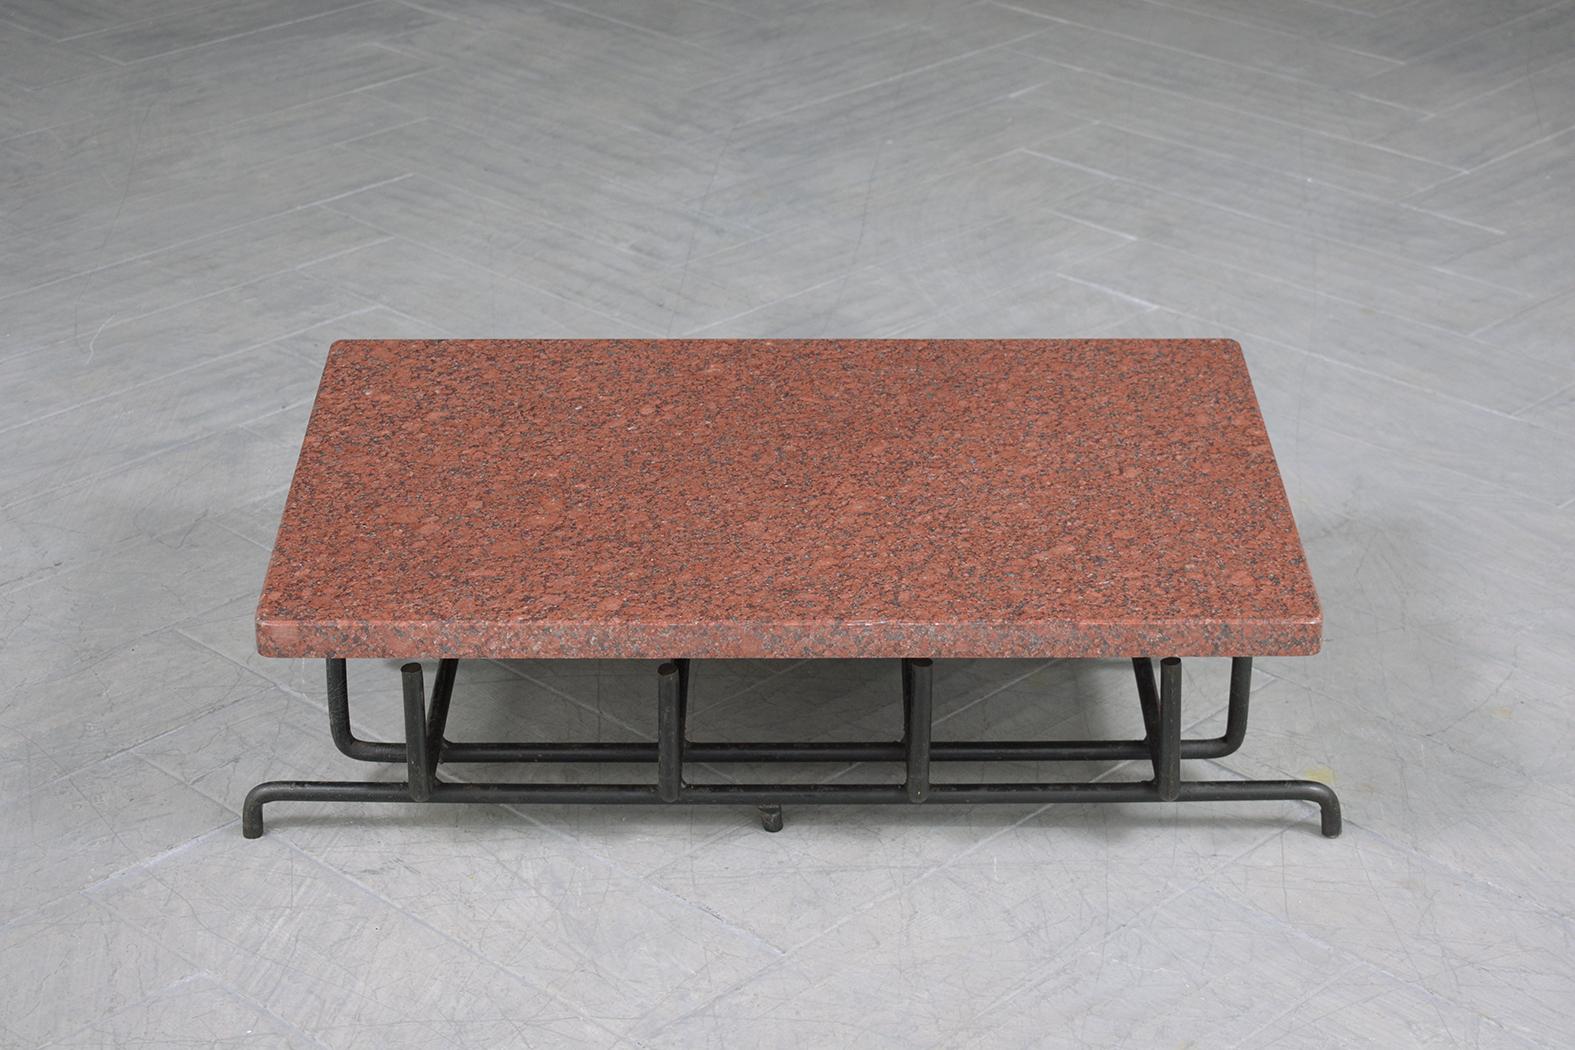 Découvrez l'élégance du design vintage avec notre table basse, une pièce unique qui associe magnifiquement des matériaux naturels à un savoir-faire artisanal. Fabriquée par des experts, cette table est dotée d'un plateau en granit rouge ivoire